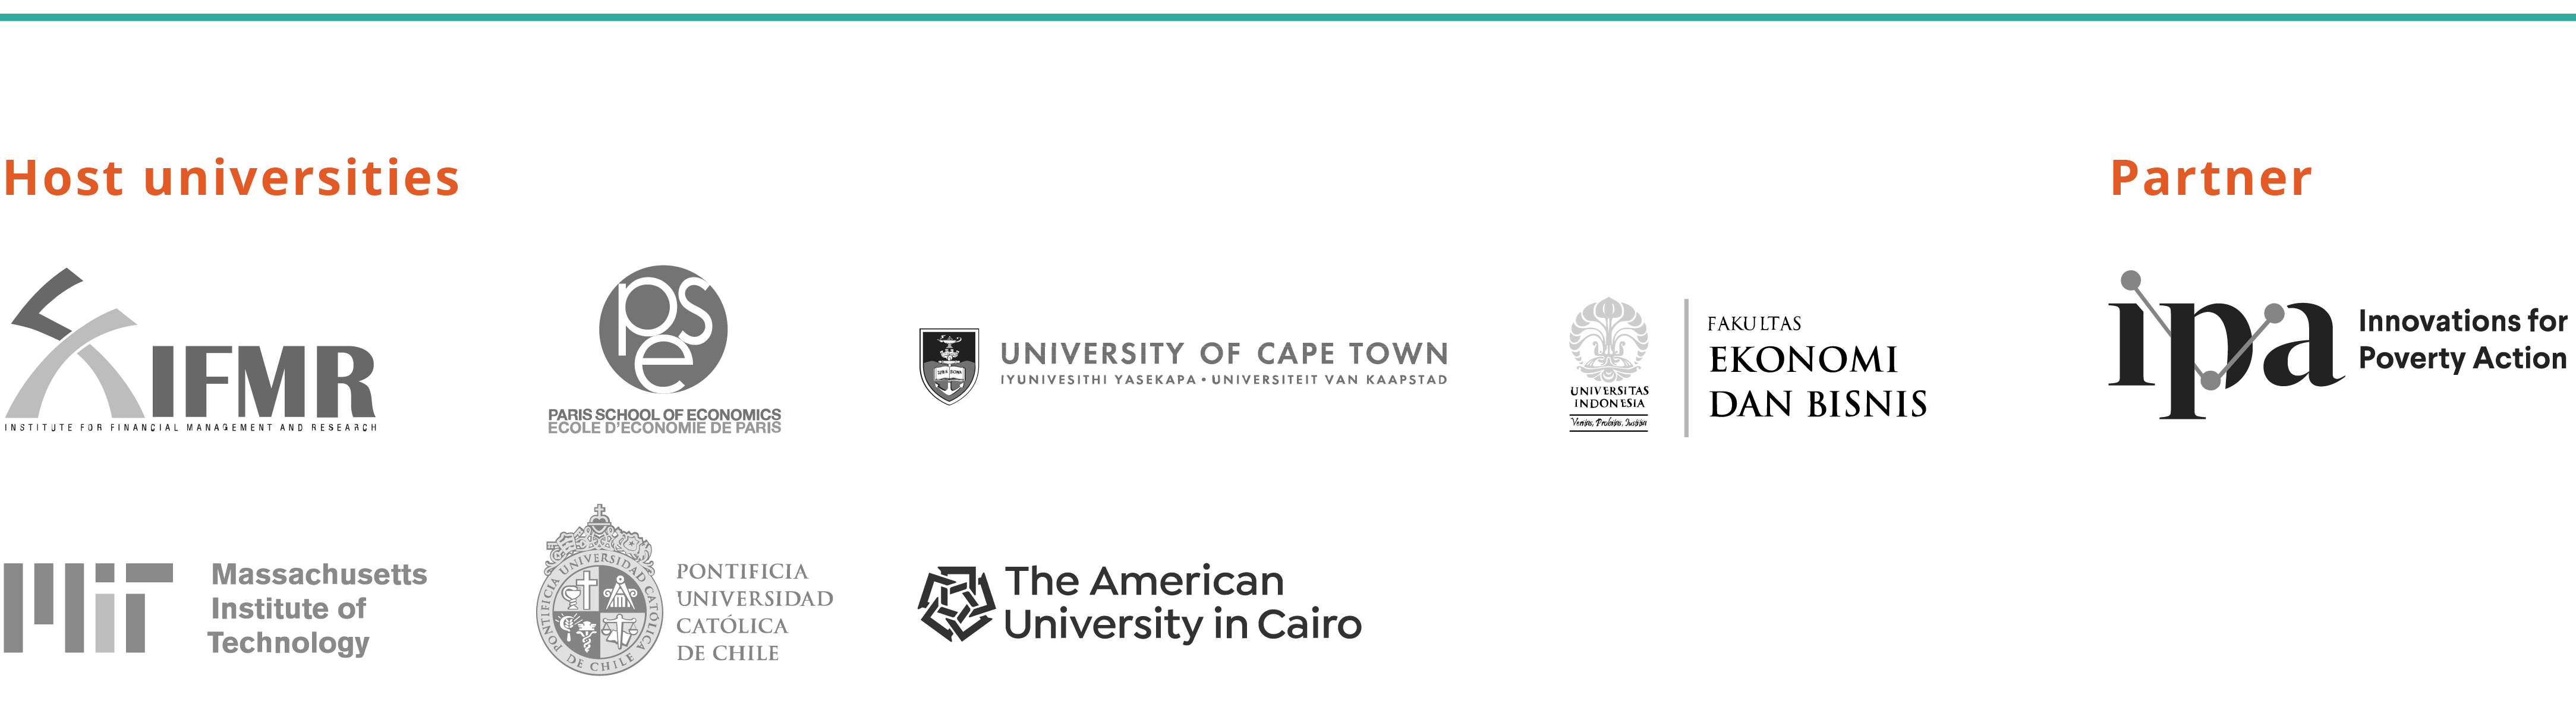 Logos of regional office host universities